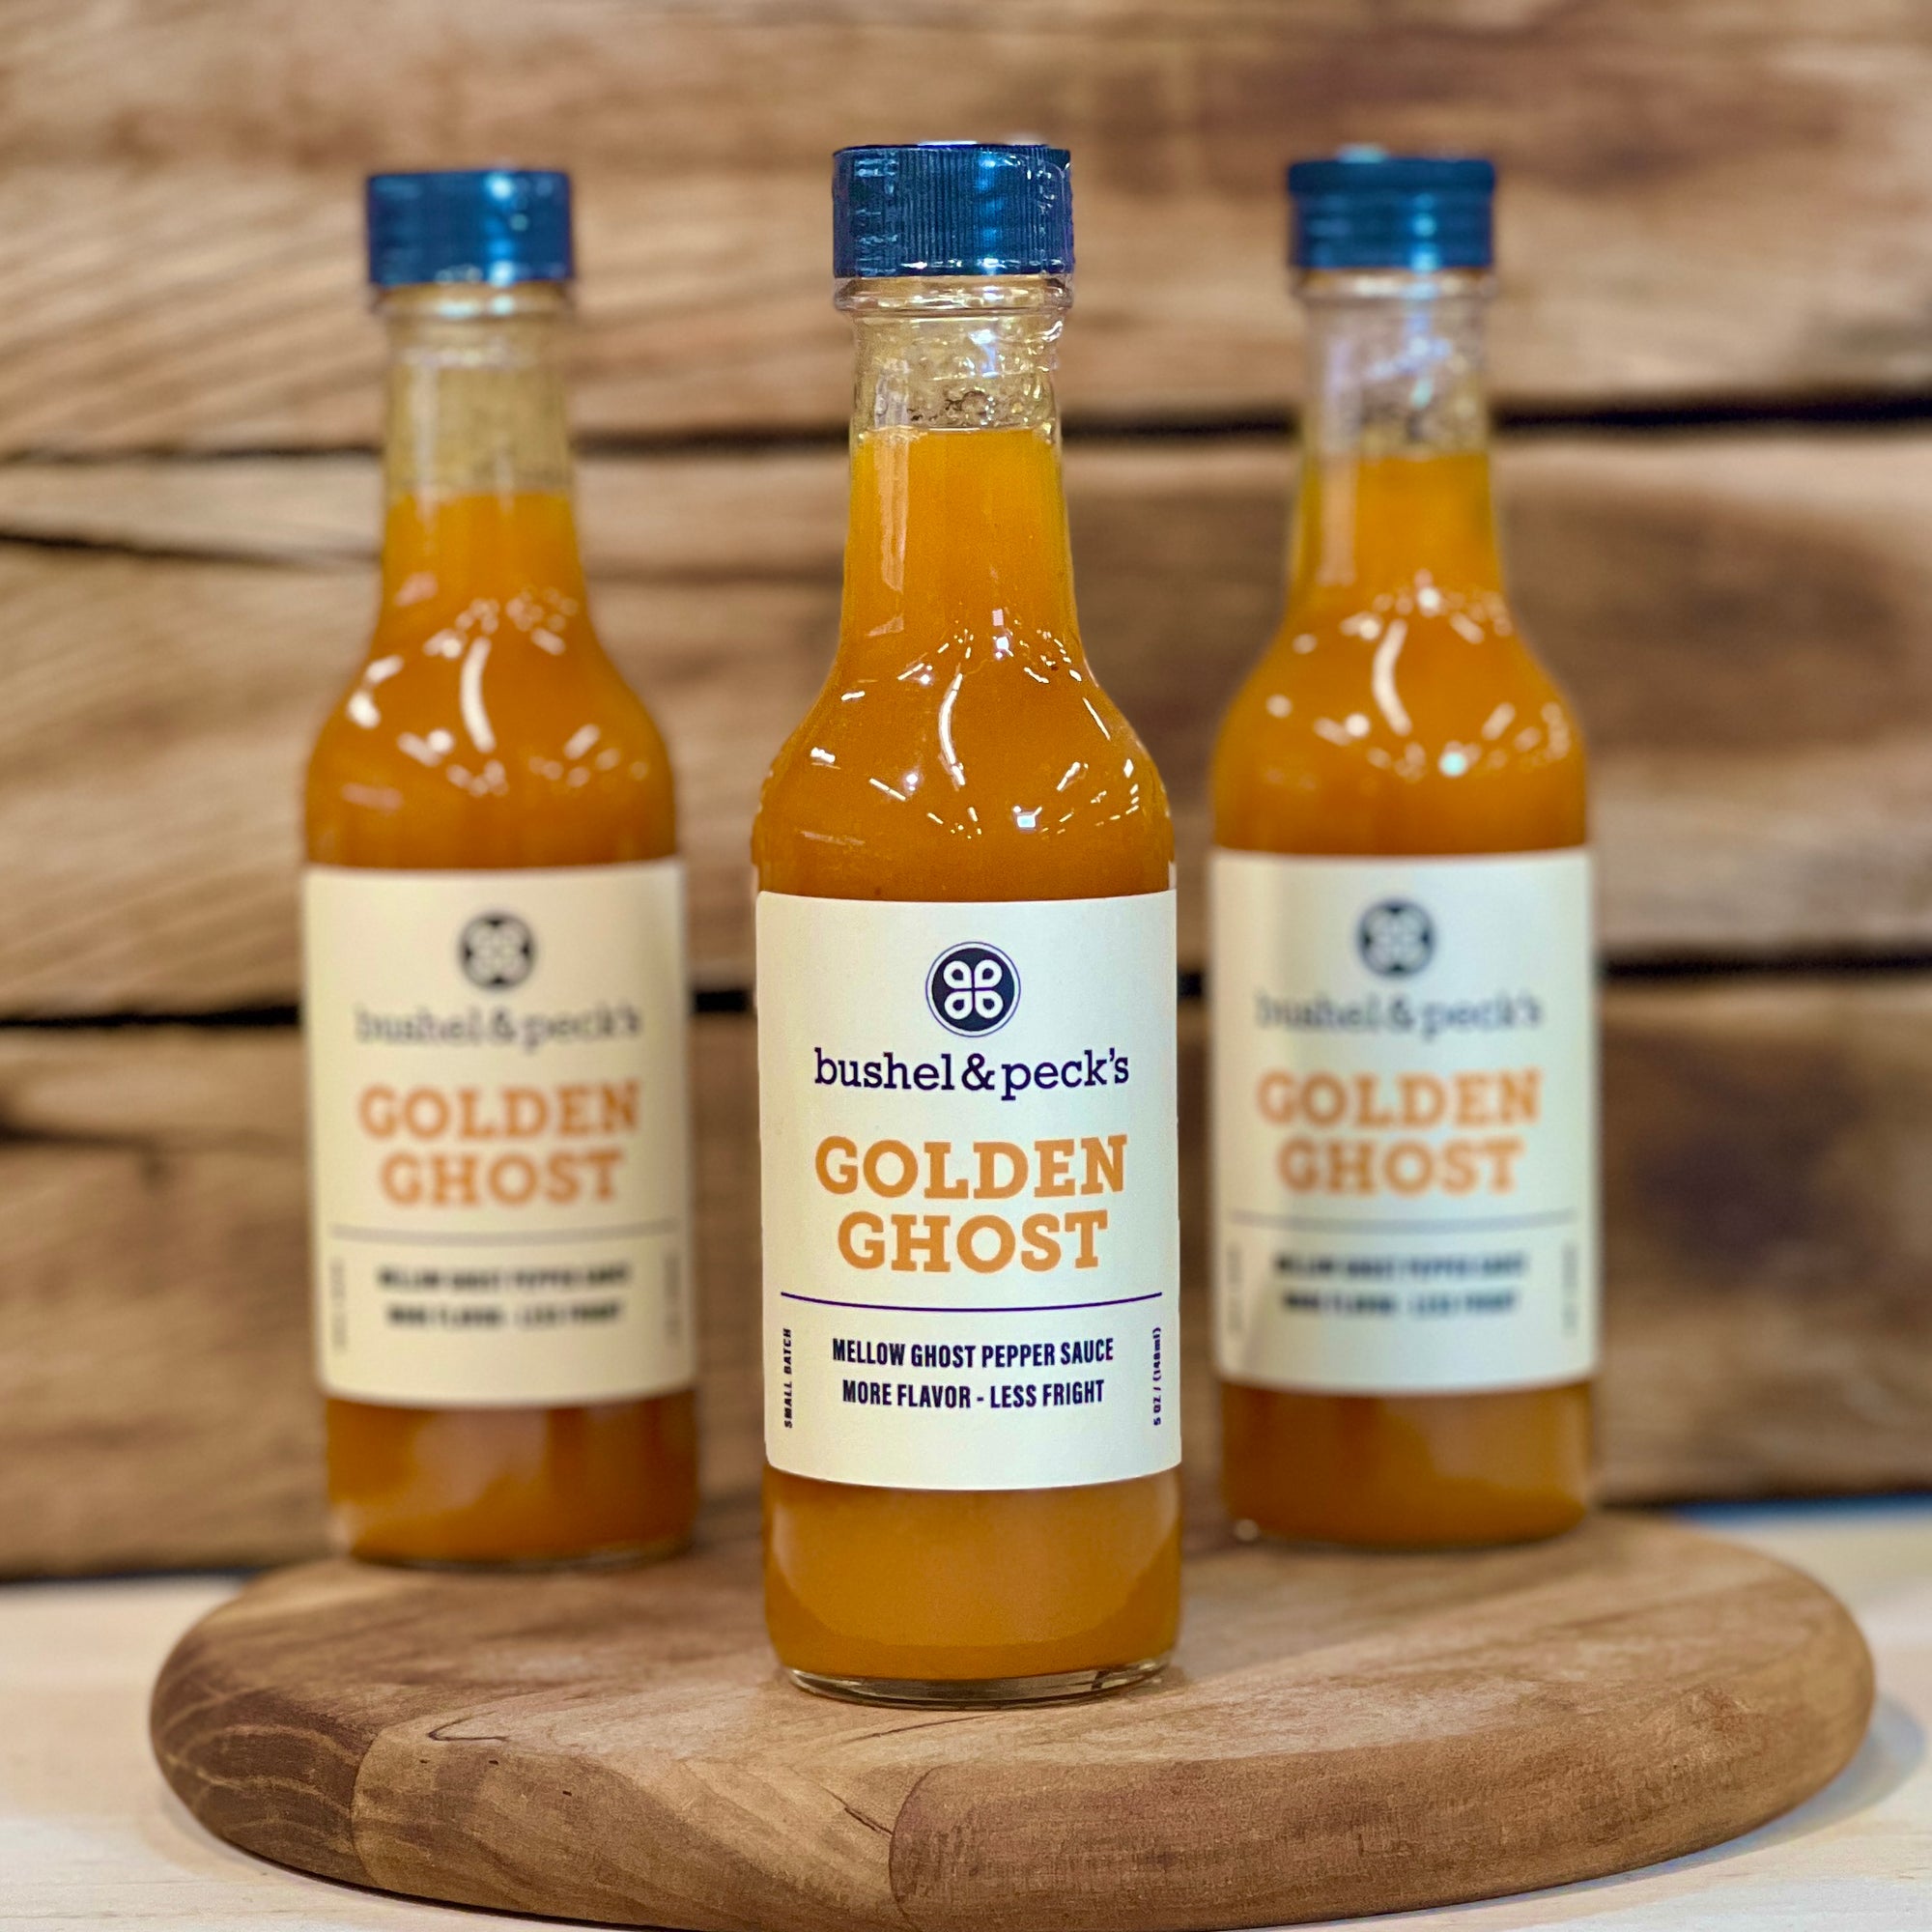 B&P's Golden Ghost Pepper Hot Sauce - Small Batch Handmade - Three Bottles